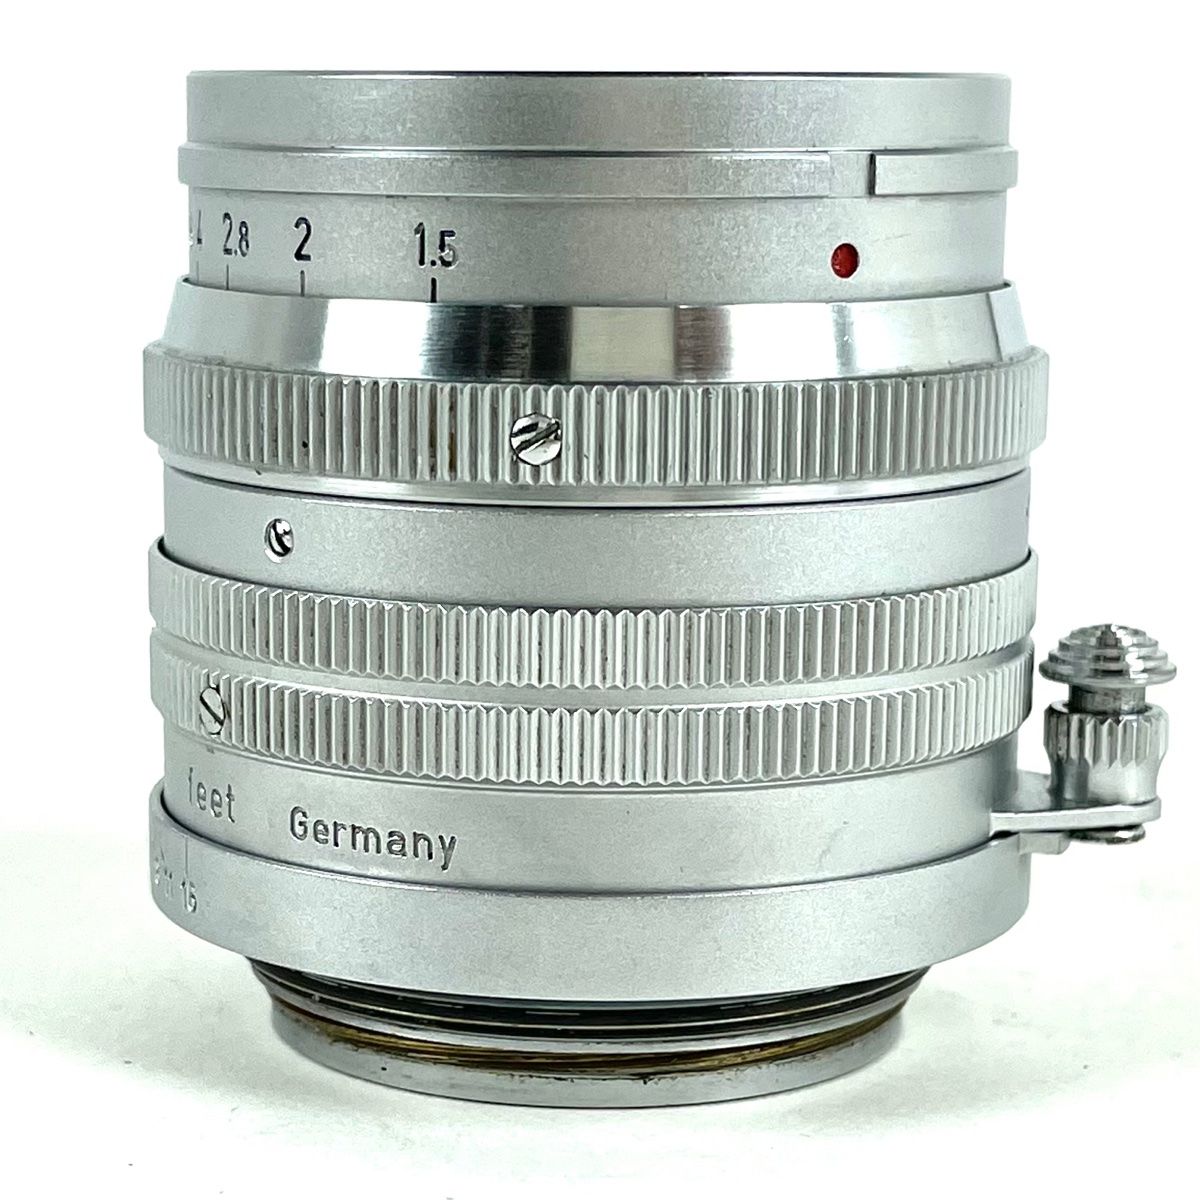 山崎磨き ライカ Summarit 5cm f1.5 Lマウント Mで即使用可 - カメラ